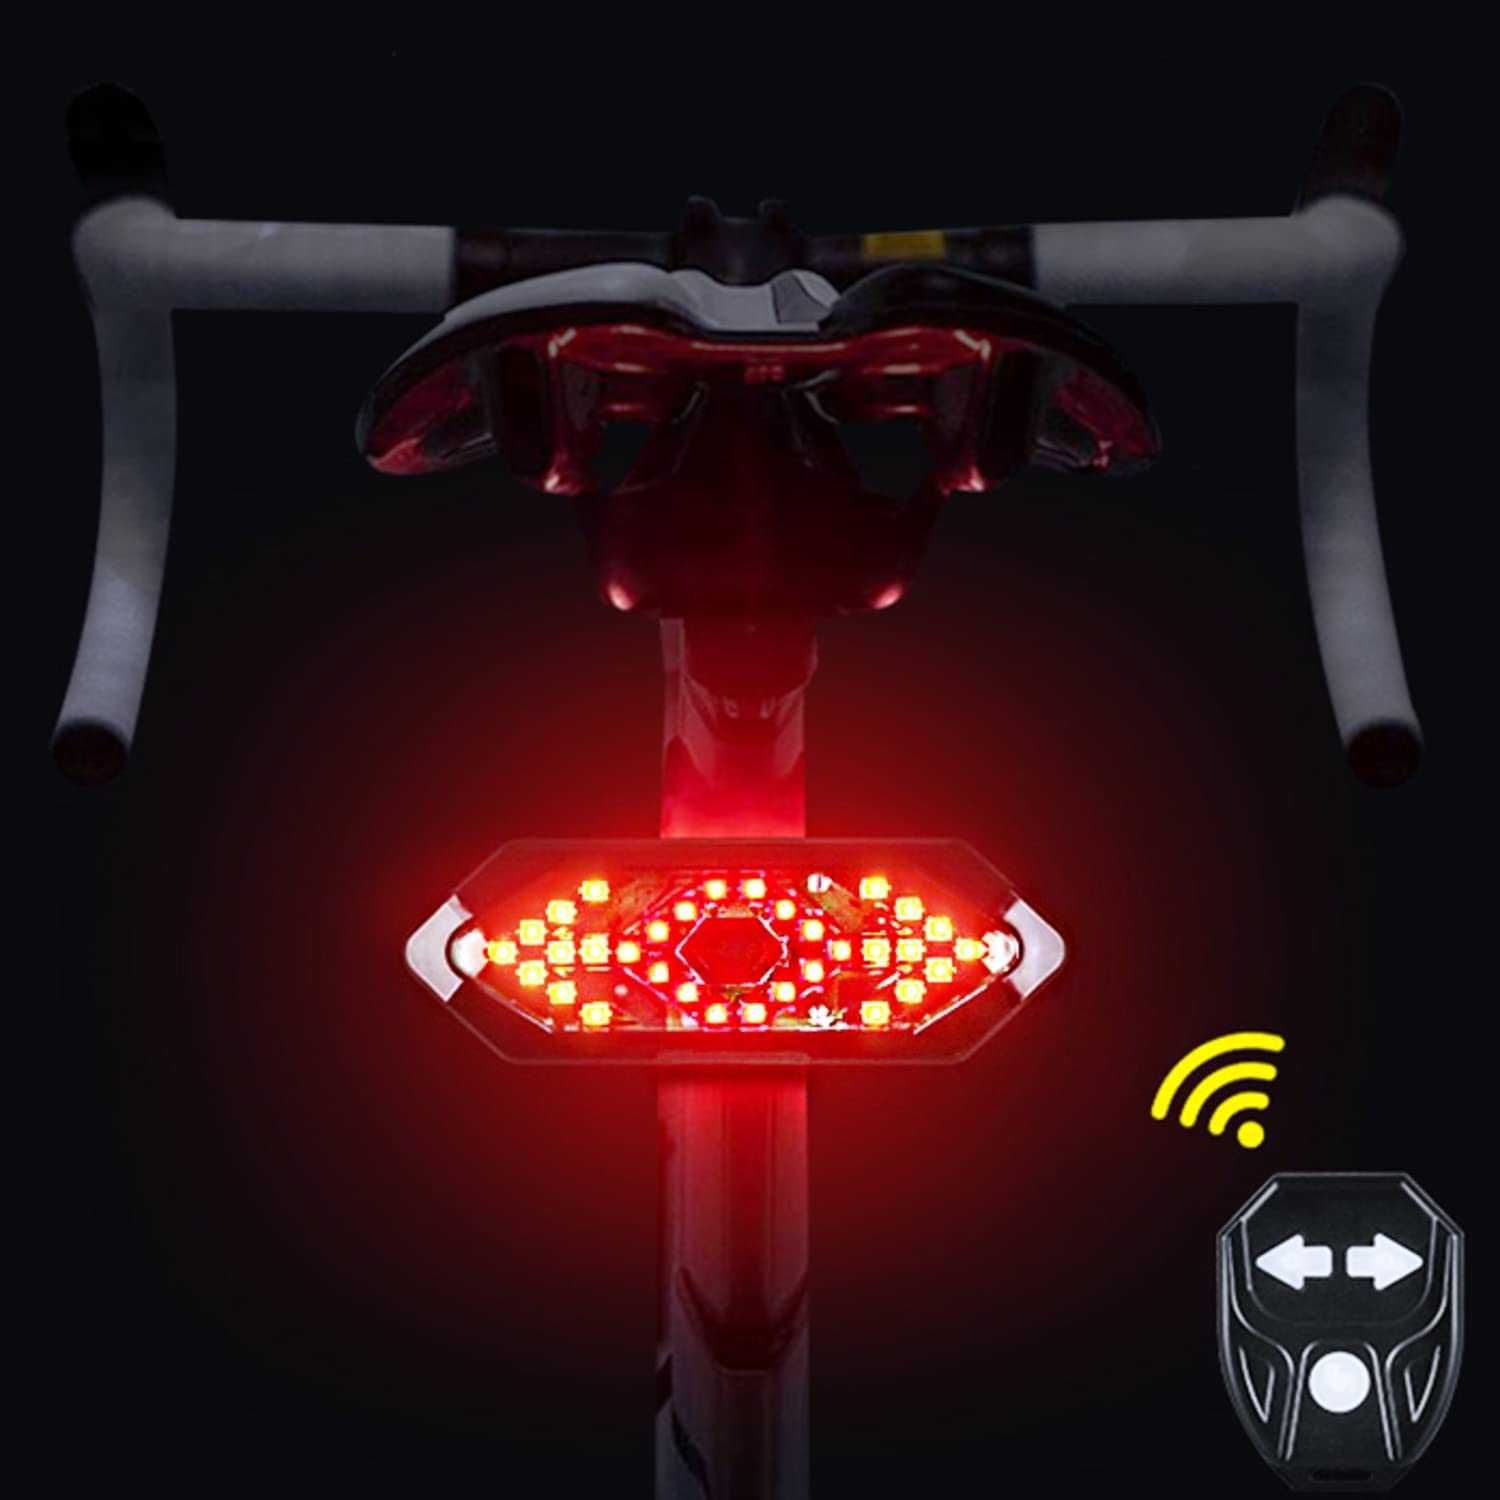 Piscas LED impermeável bicicleta trotinete bat.750mAh usb c/comando